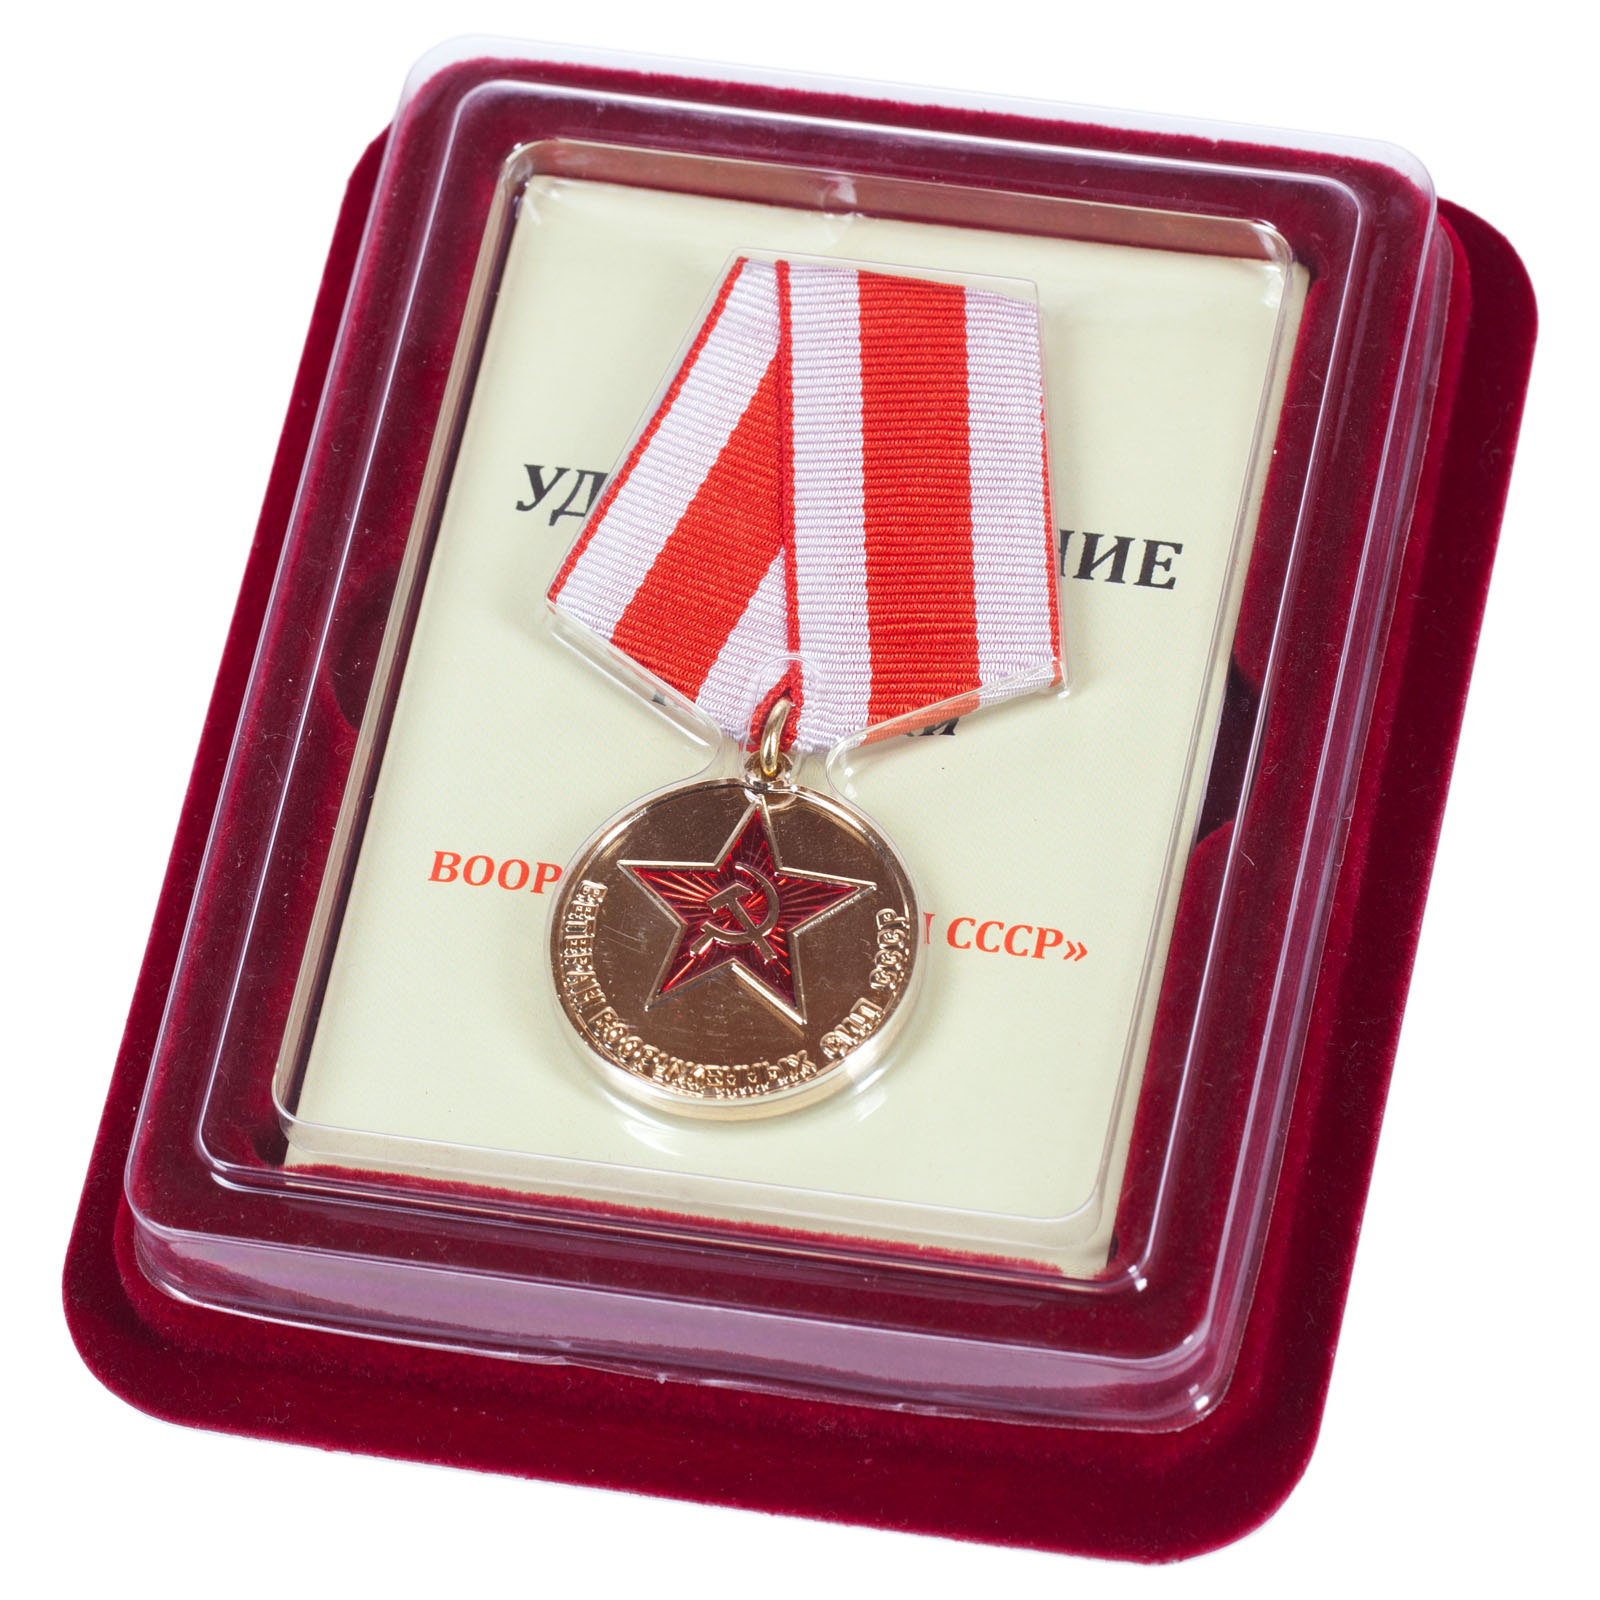 Купить медаль "Ветеран Вооруженных сил СССР" в наградном футляре